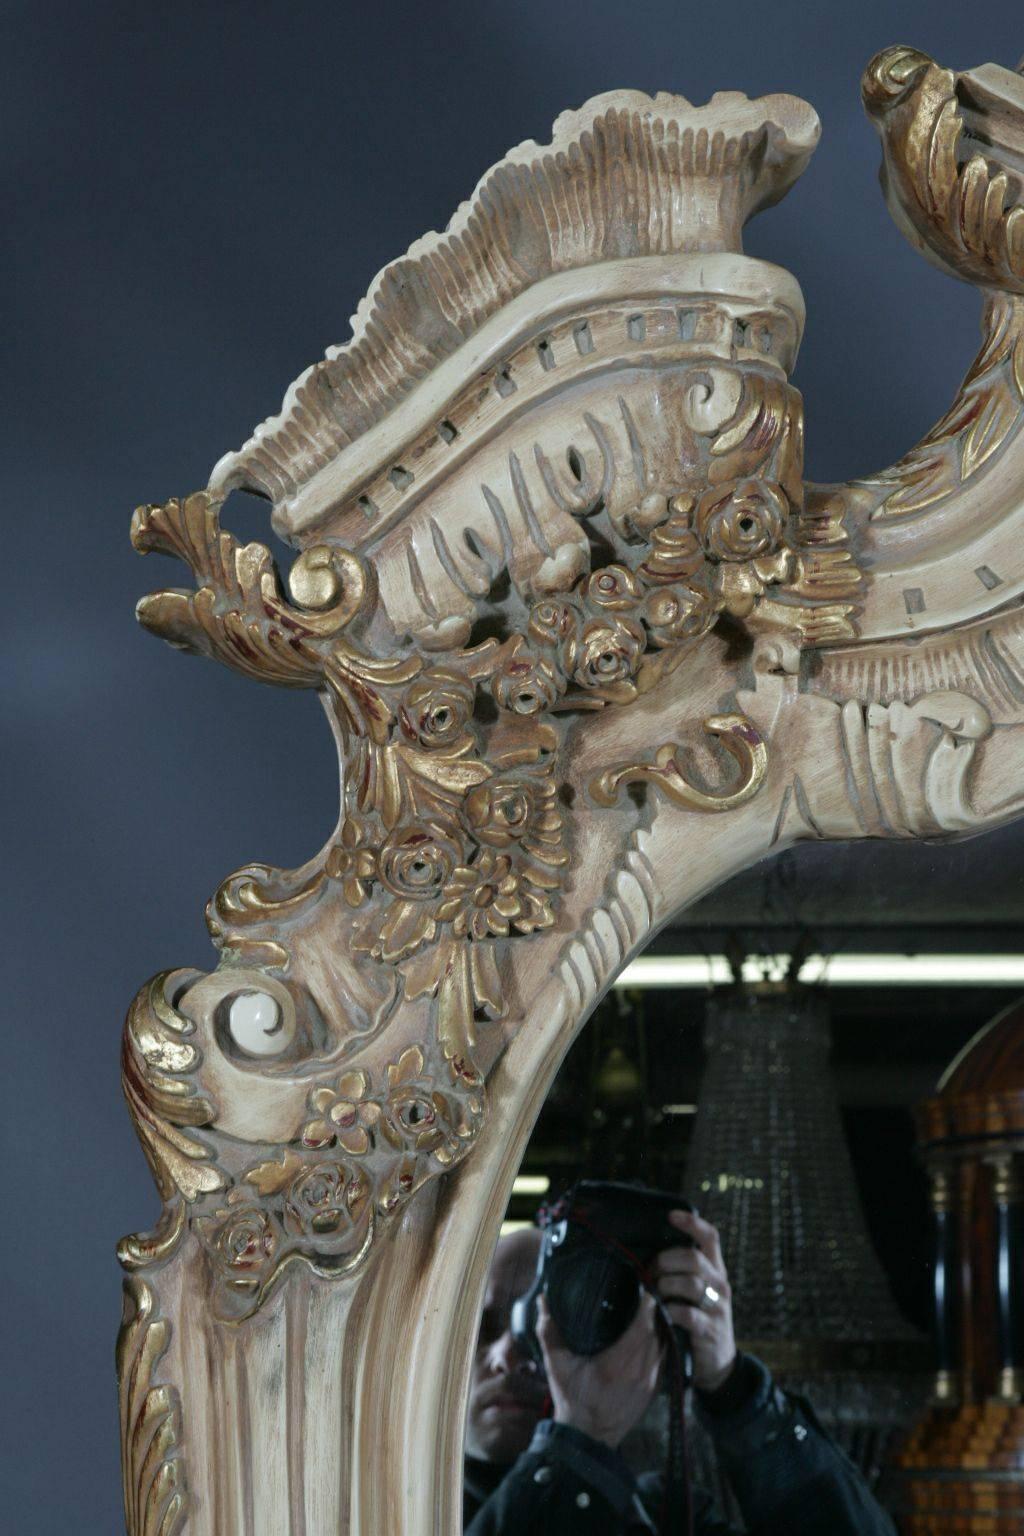 miroir sur pied de style Louis XV, 20e siècle
Miroir sur pied astrocratique monumental de style Louis XV
Bois de hêtre massif, finement sculpté, coloré, peint à la main et doré. Fermeture du cadre sculptée de manière élaborée et fortement